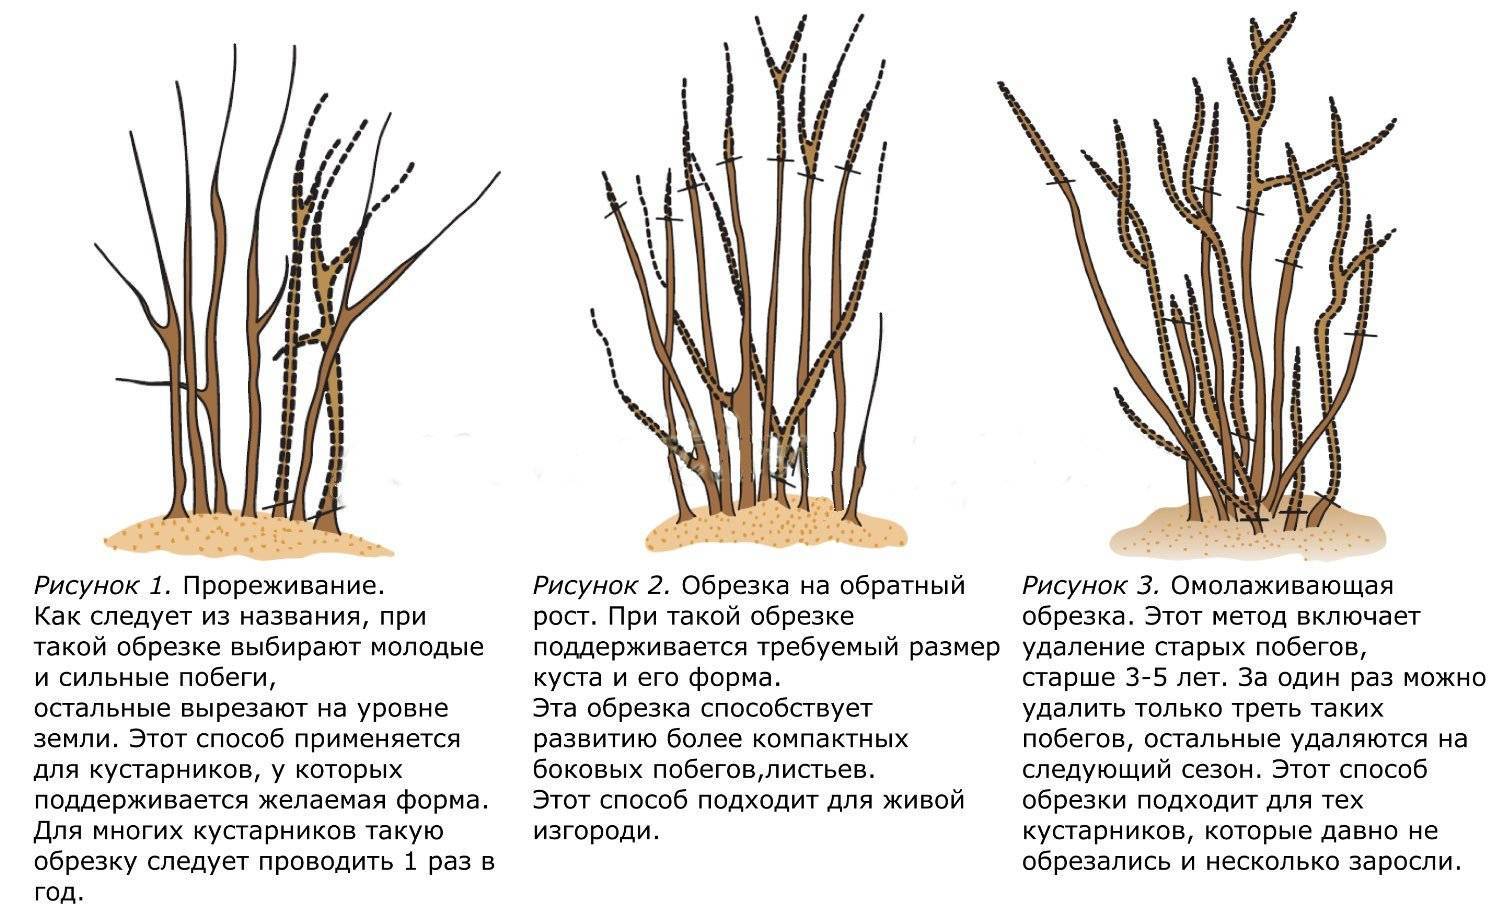 Крыжовник: посадка в открытом грунте, технология выращивания, особенности ухода, урожайность